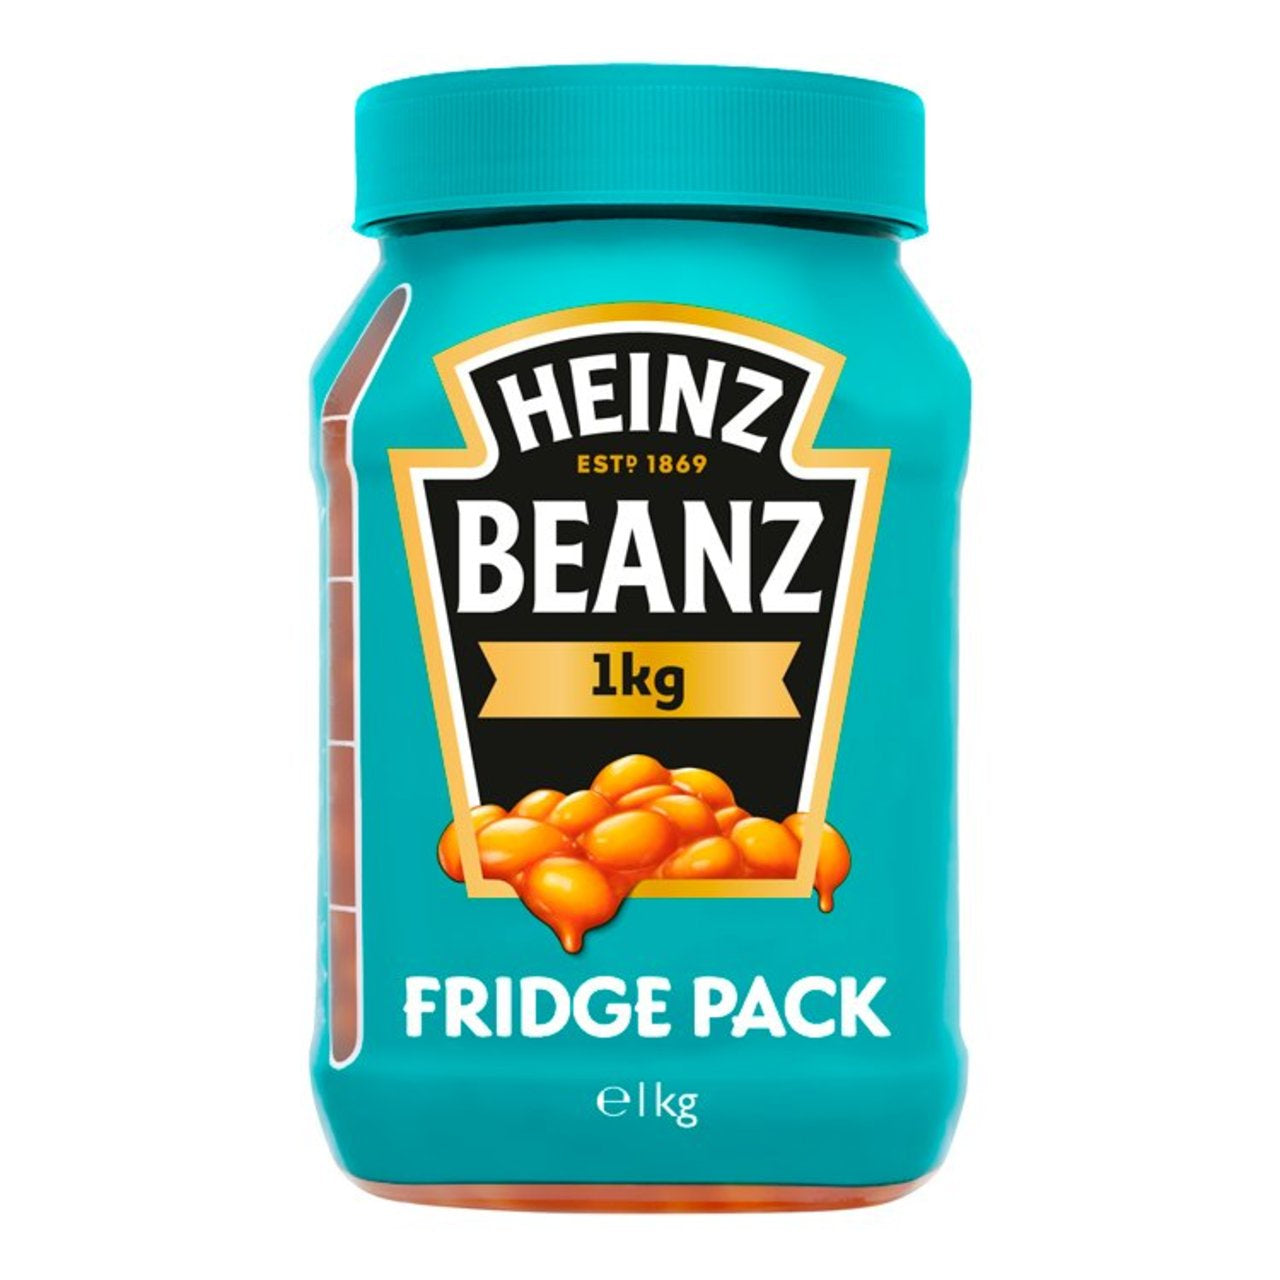 Heinz Beanz Fridge Pack 1kg